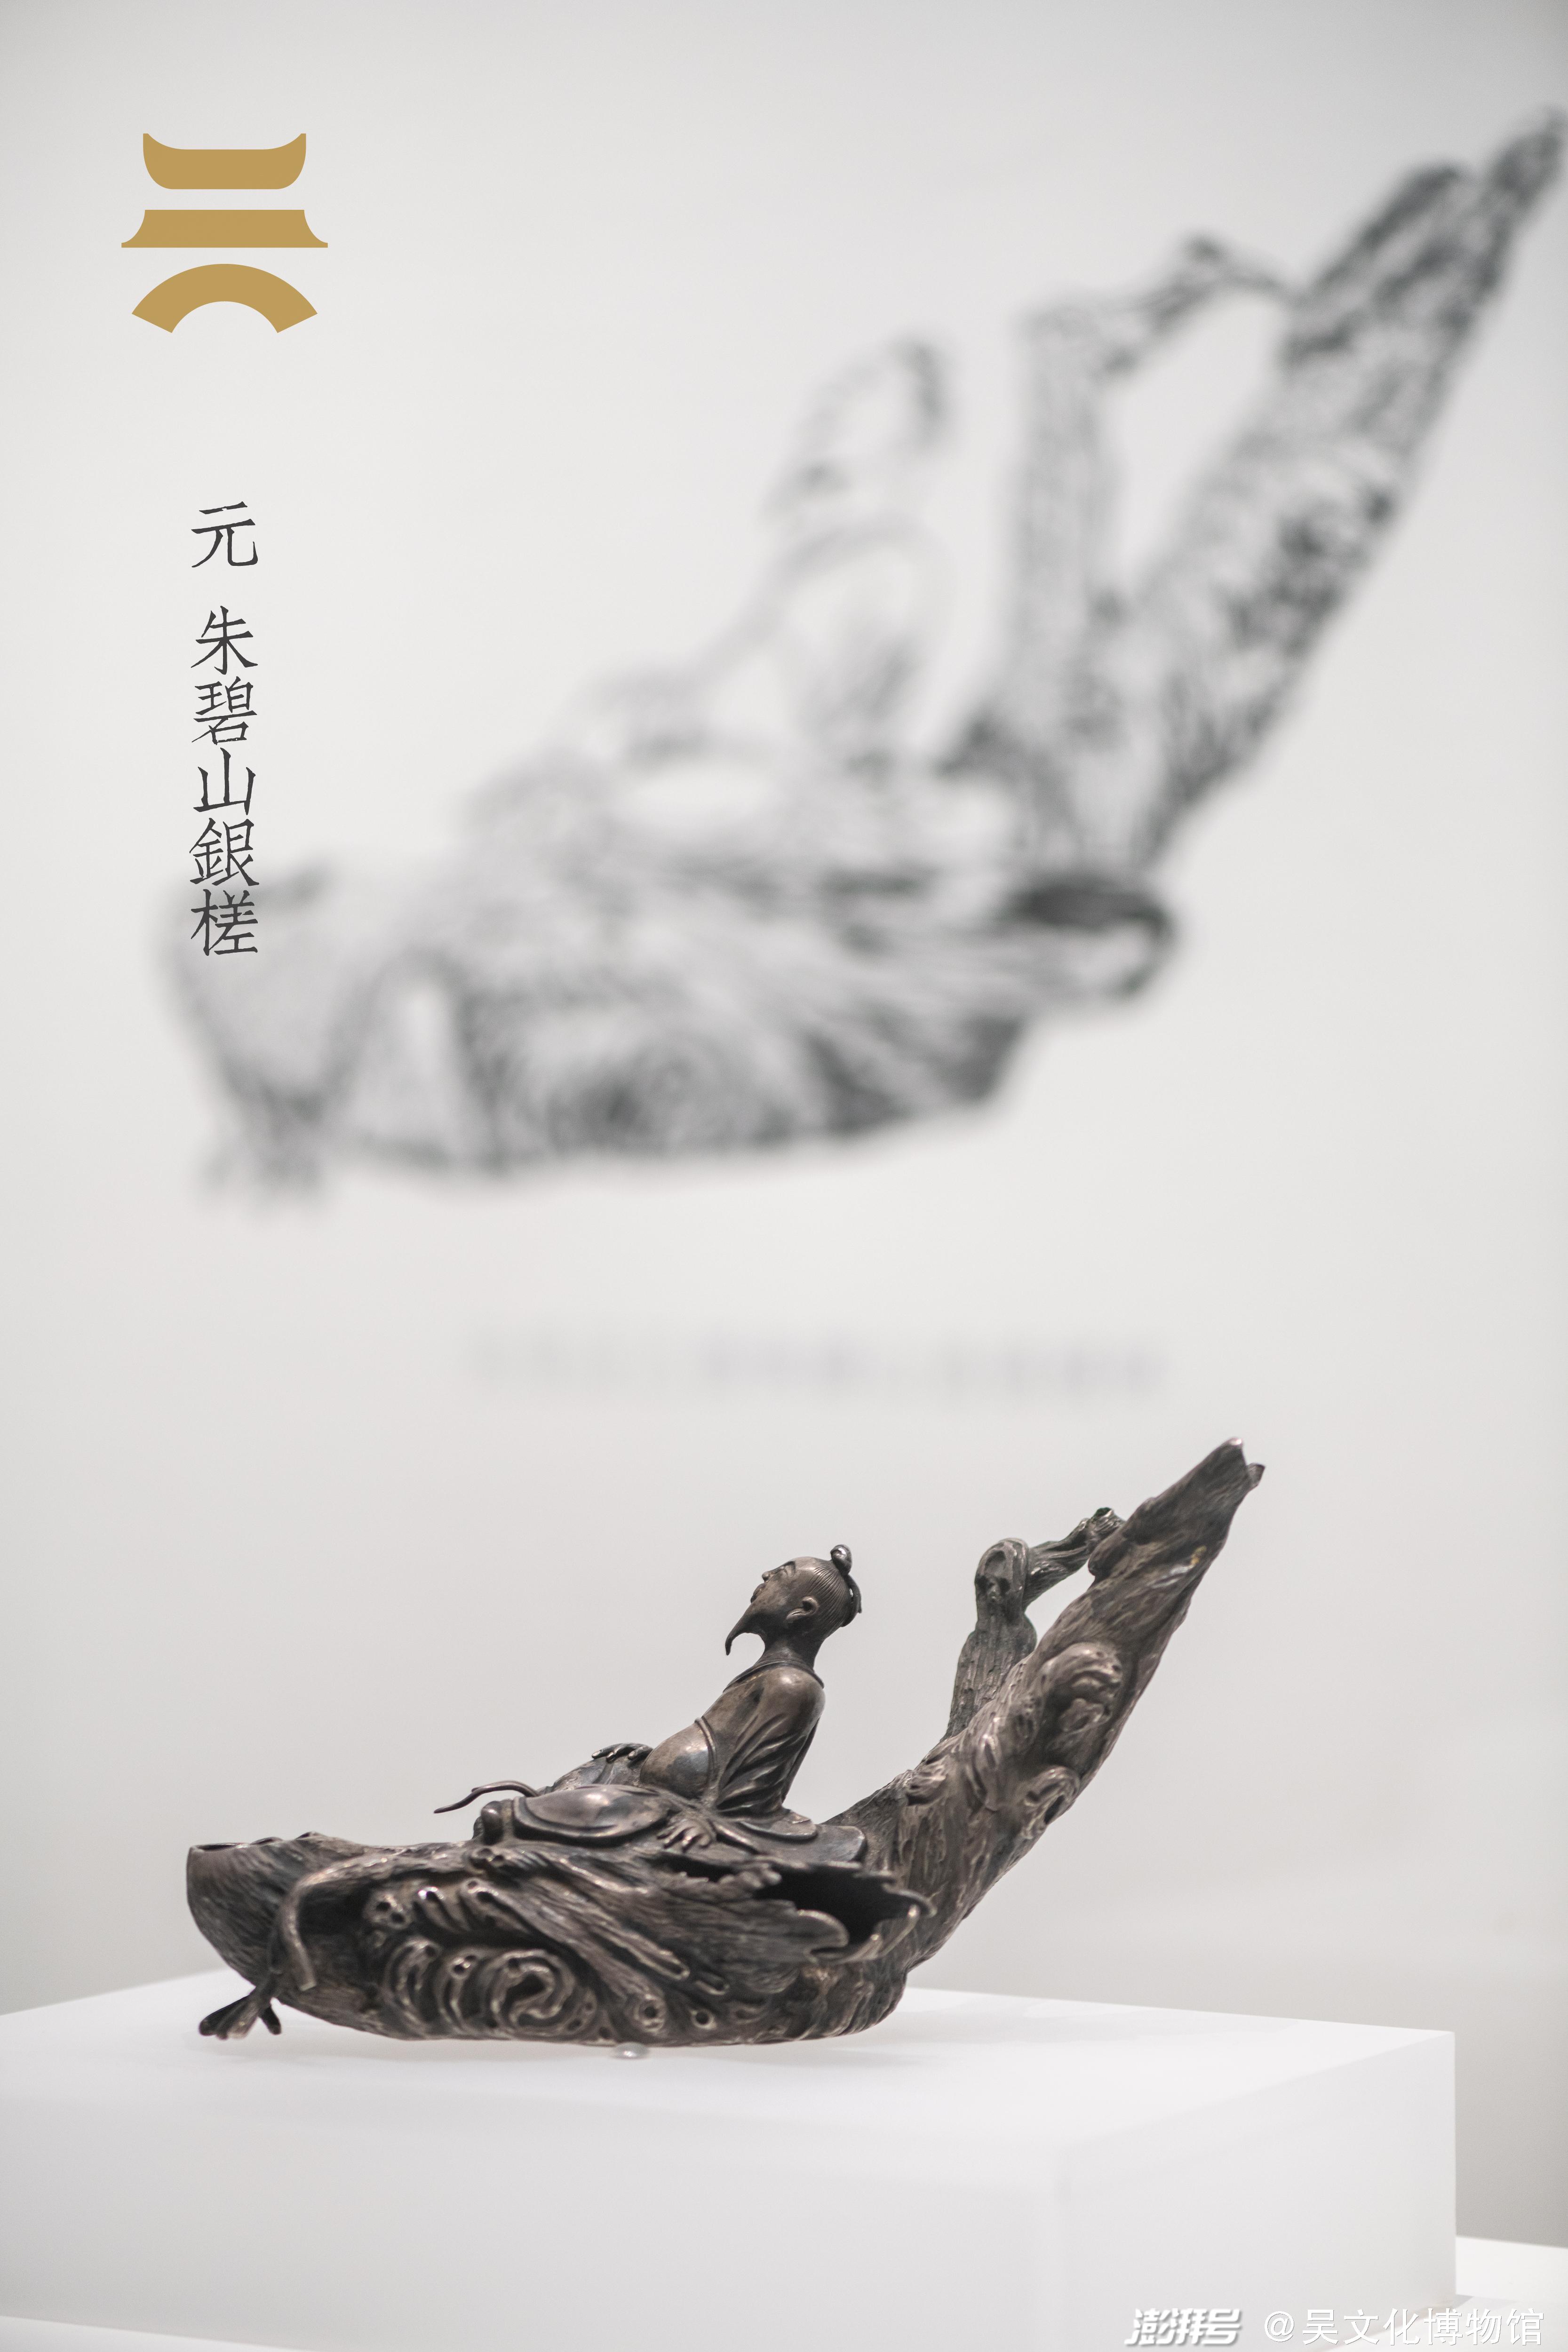 吴文化博物馆展览看国宝吴地文物再想象